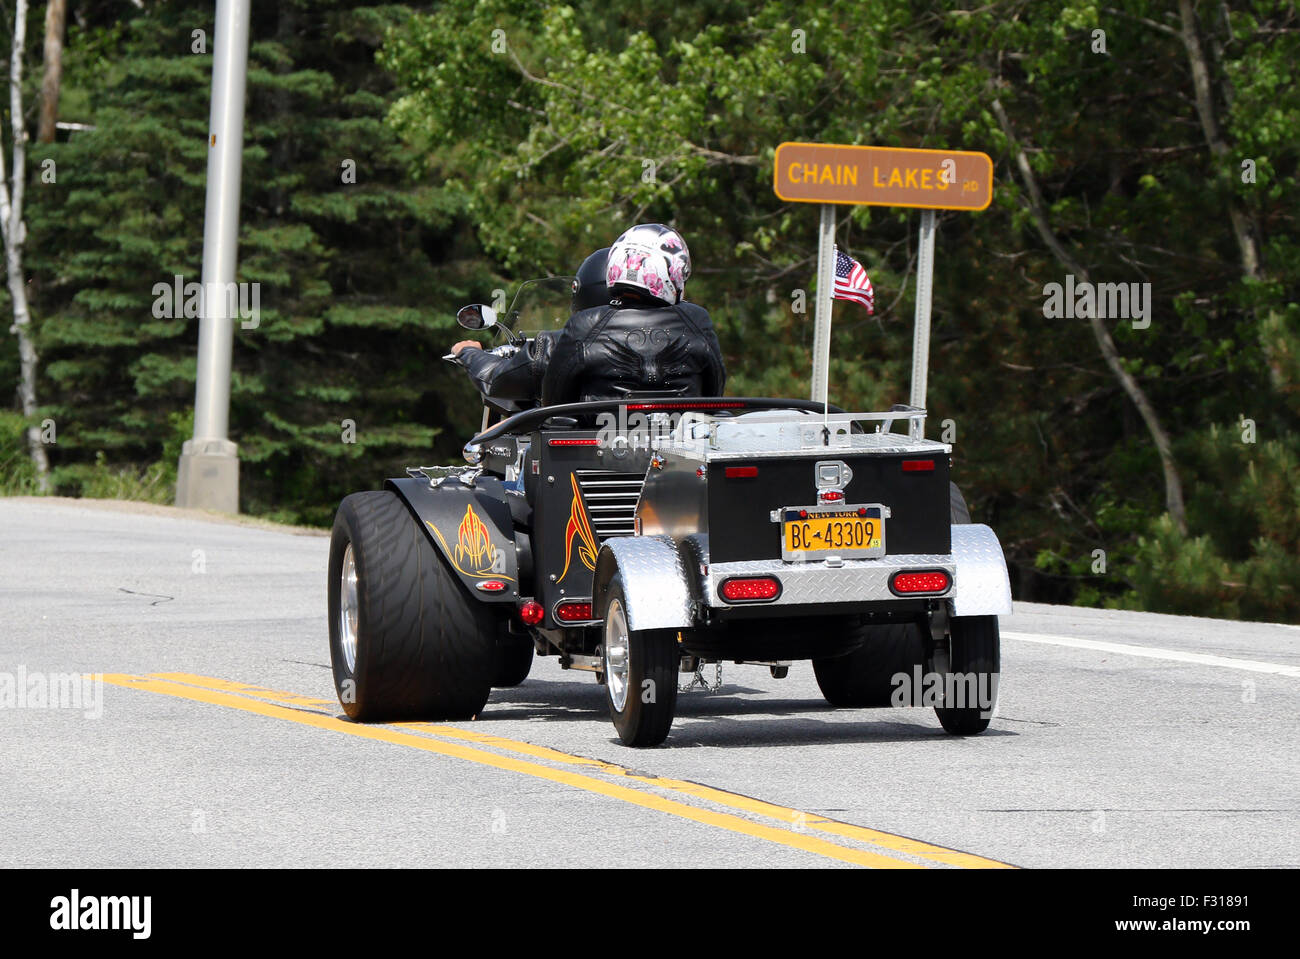 Three wheel wheeler trik motorcycle motorbike towing a trailer. Stock Photo